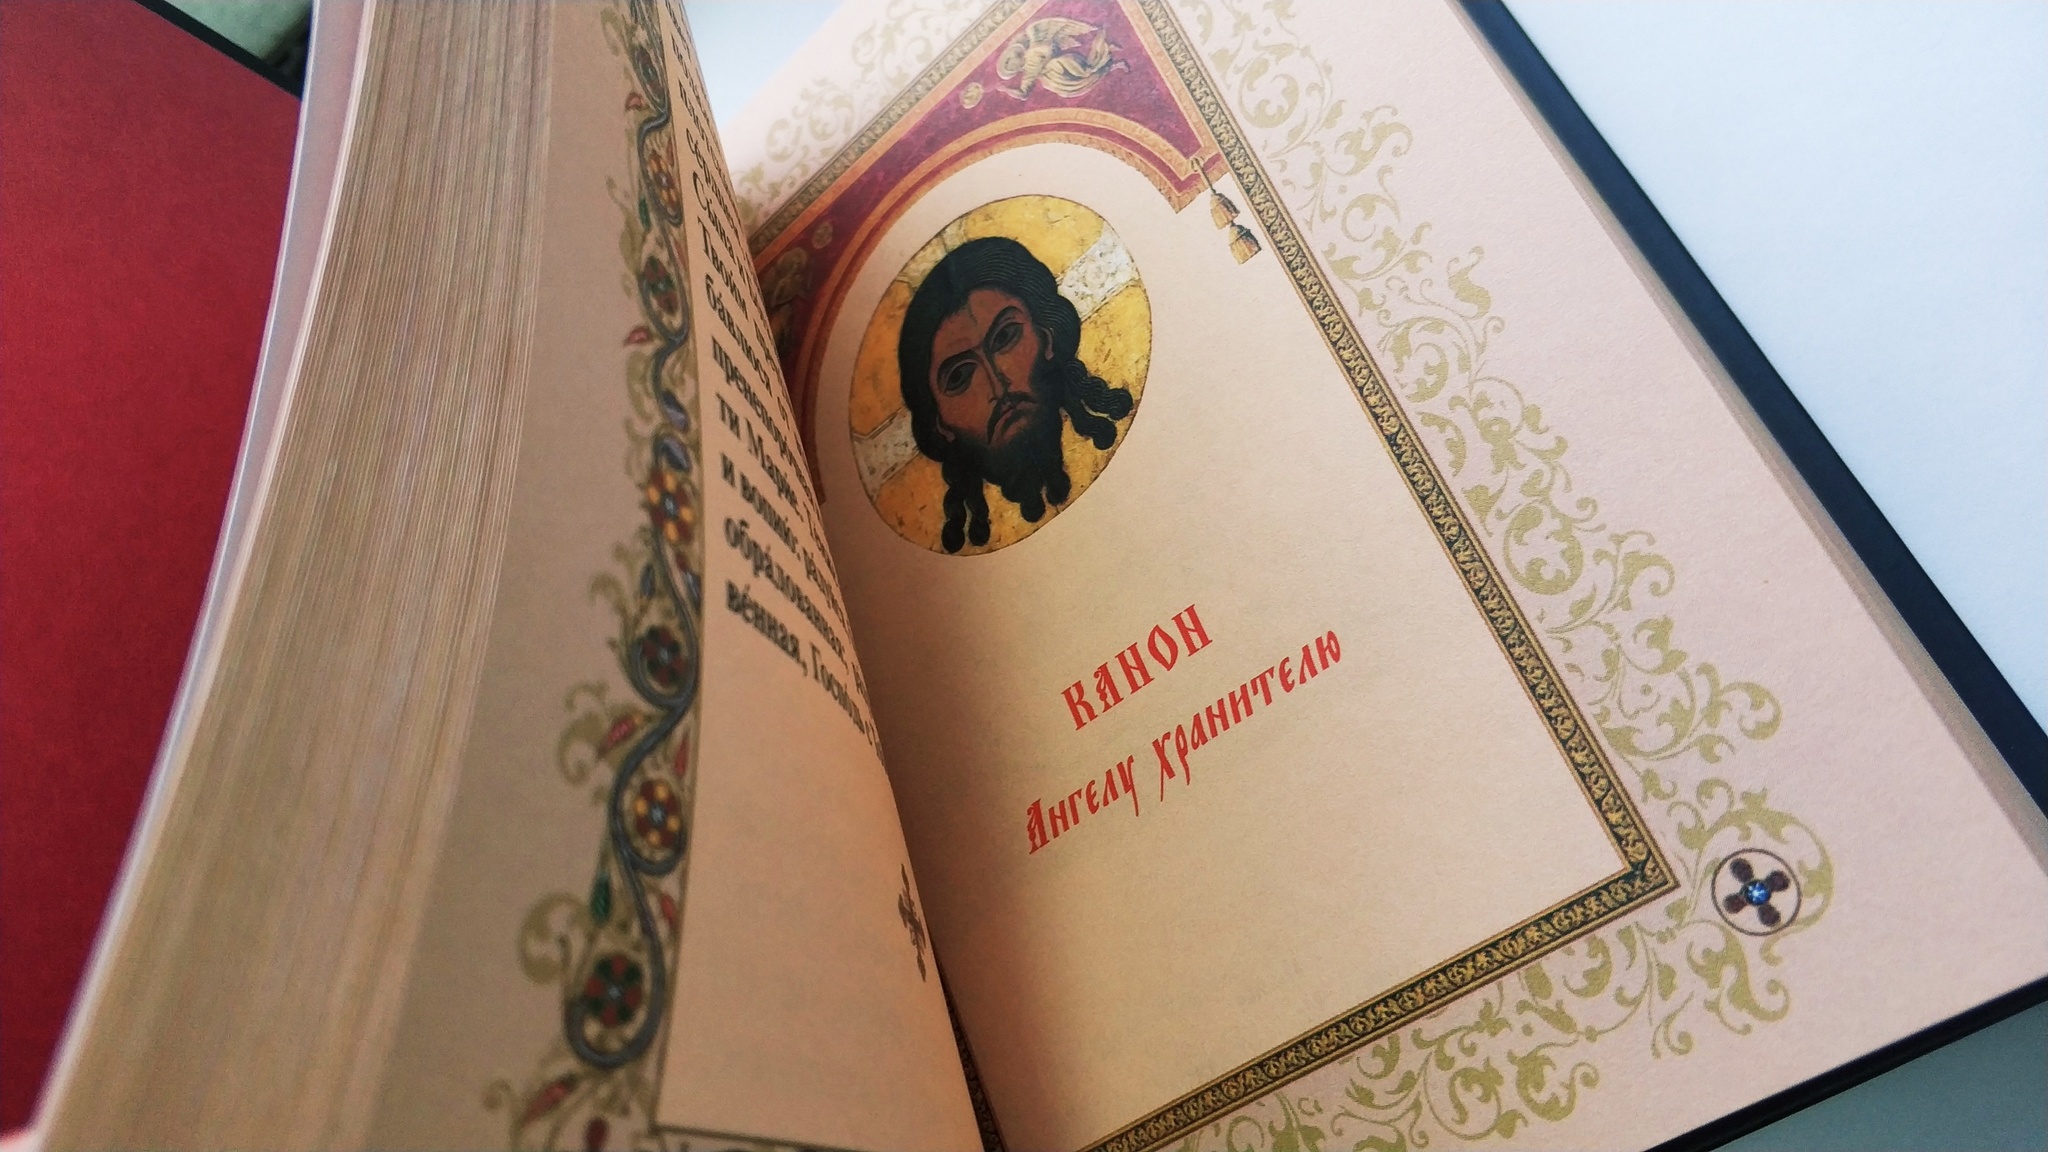 Православный молитвослов 